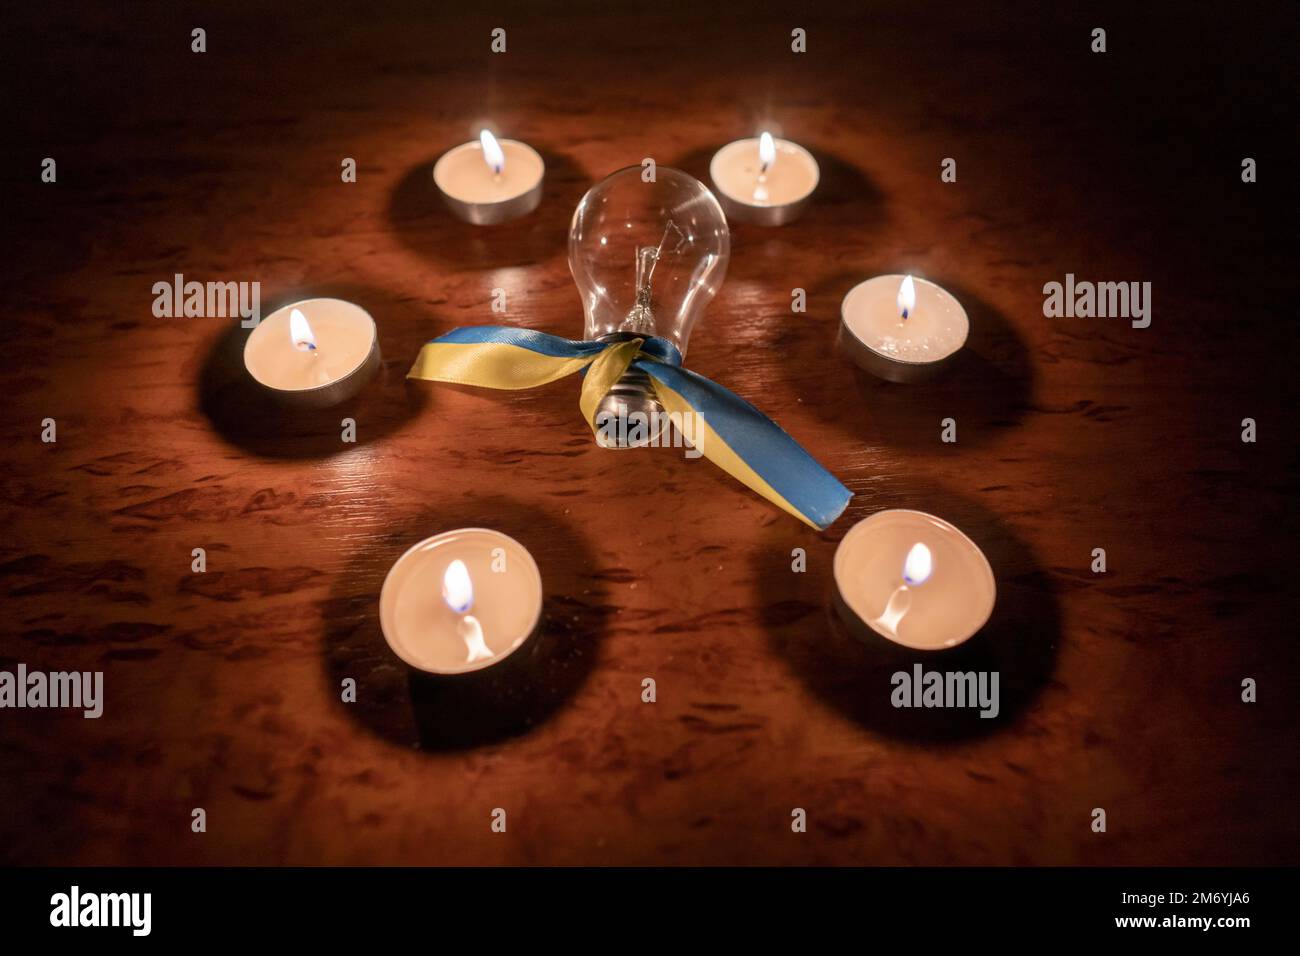 Elektrische Glühbirne mit einem gelb-blauen Band (nationales Symbol der Ukraine) in einem Kerzenkreis. Stromausfall. Energiekrise. Stromausfallkonzept Stockfoto